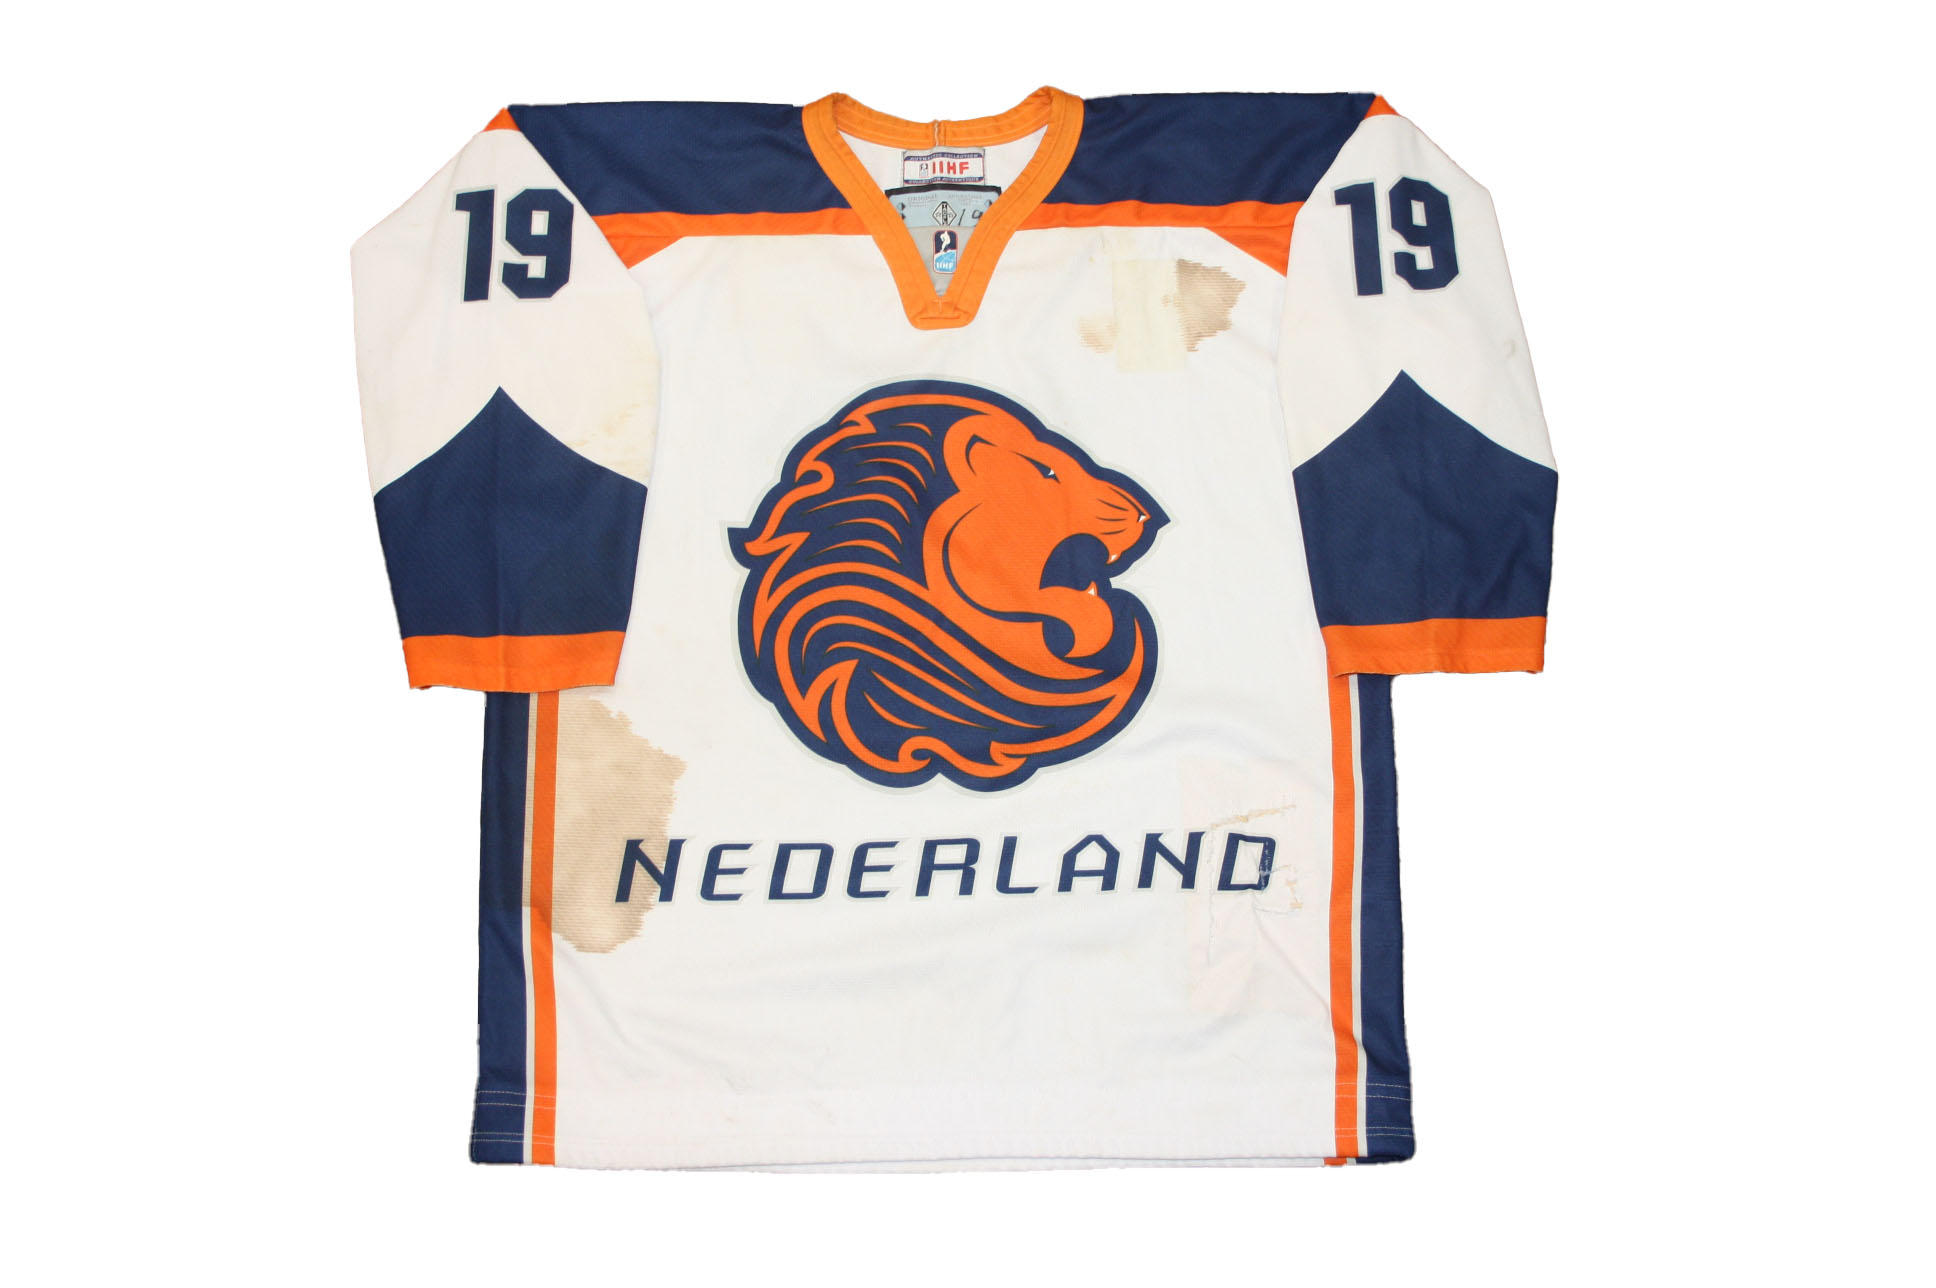 wedstrijdshirt #19 - Shop IJshockey Nederland